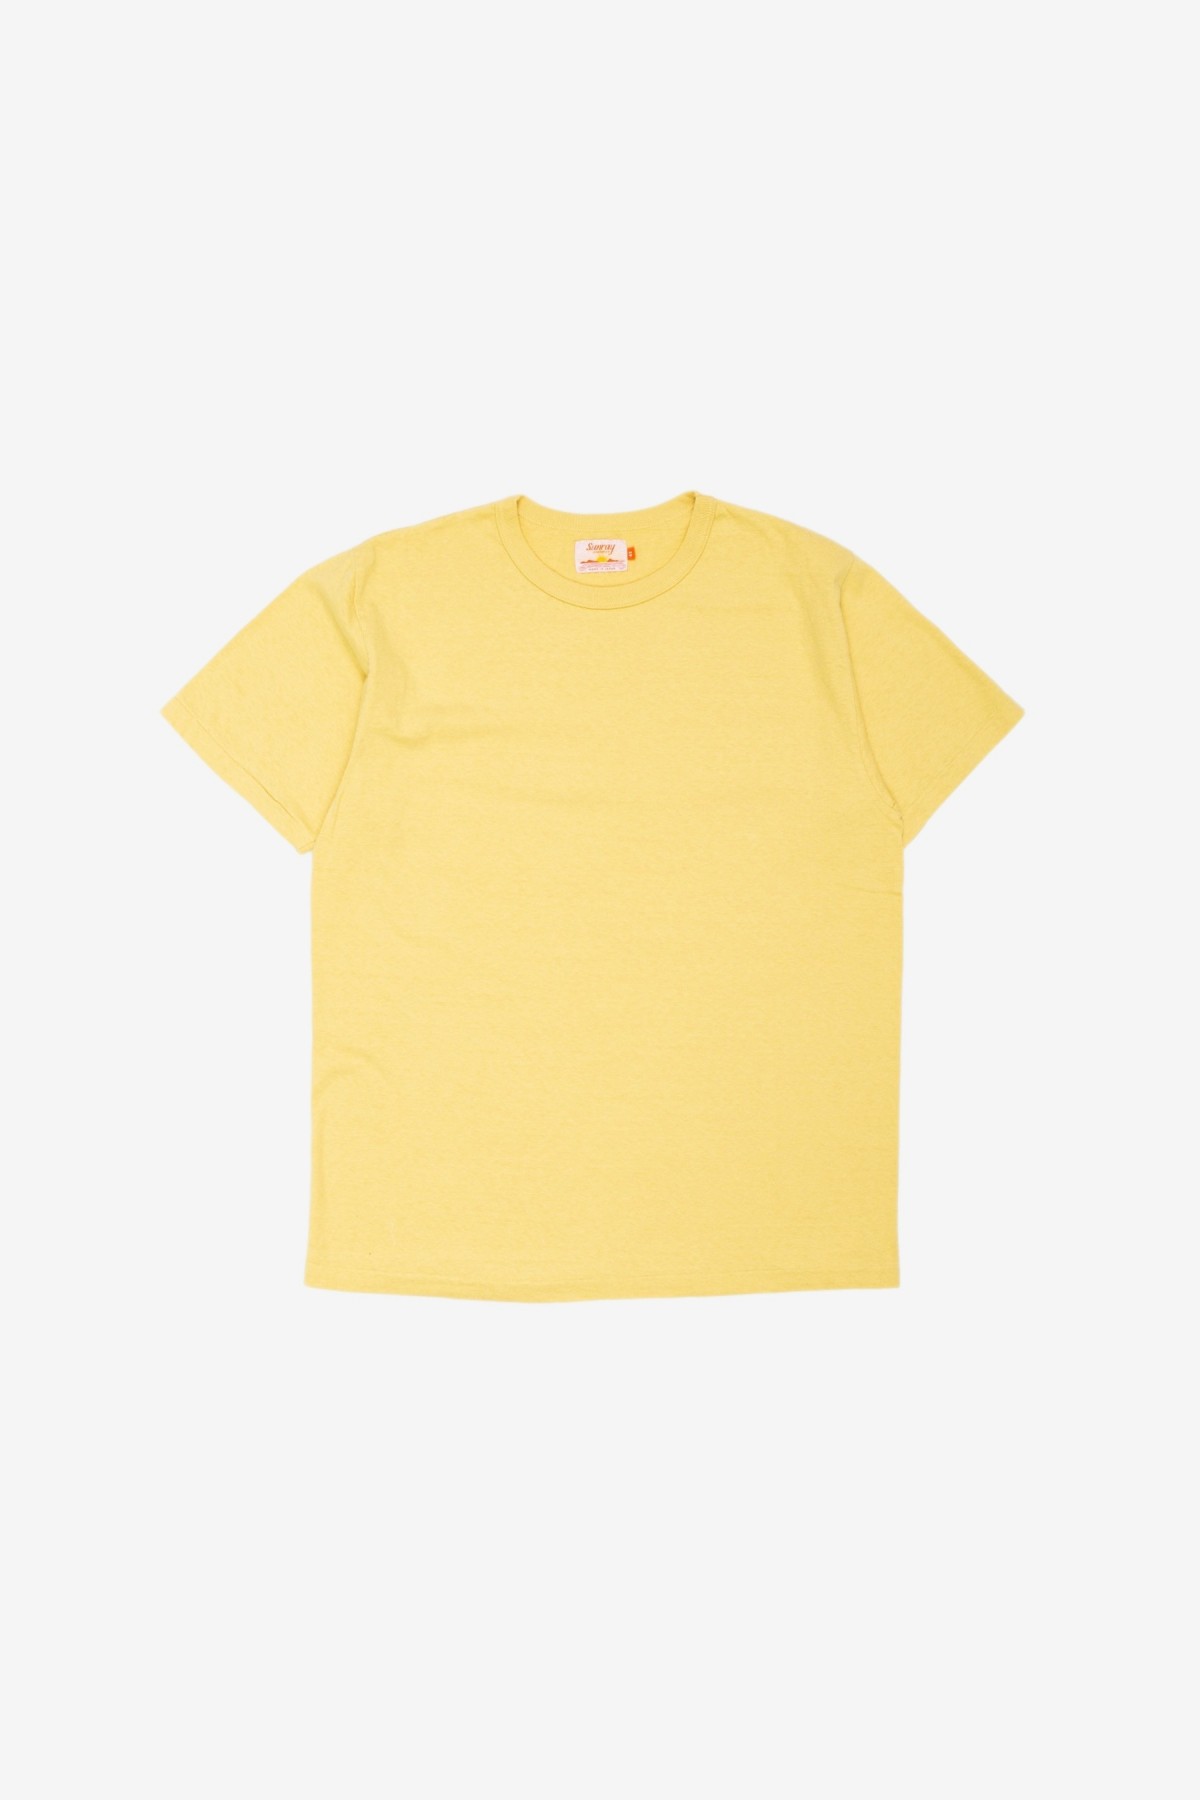 Sunray Sportswear Haleiwa Short Sleeve T-Shirt in Dusky Citron